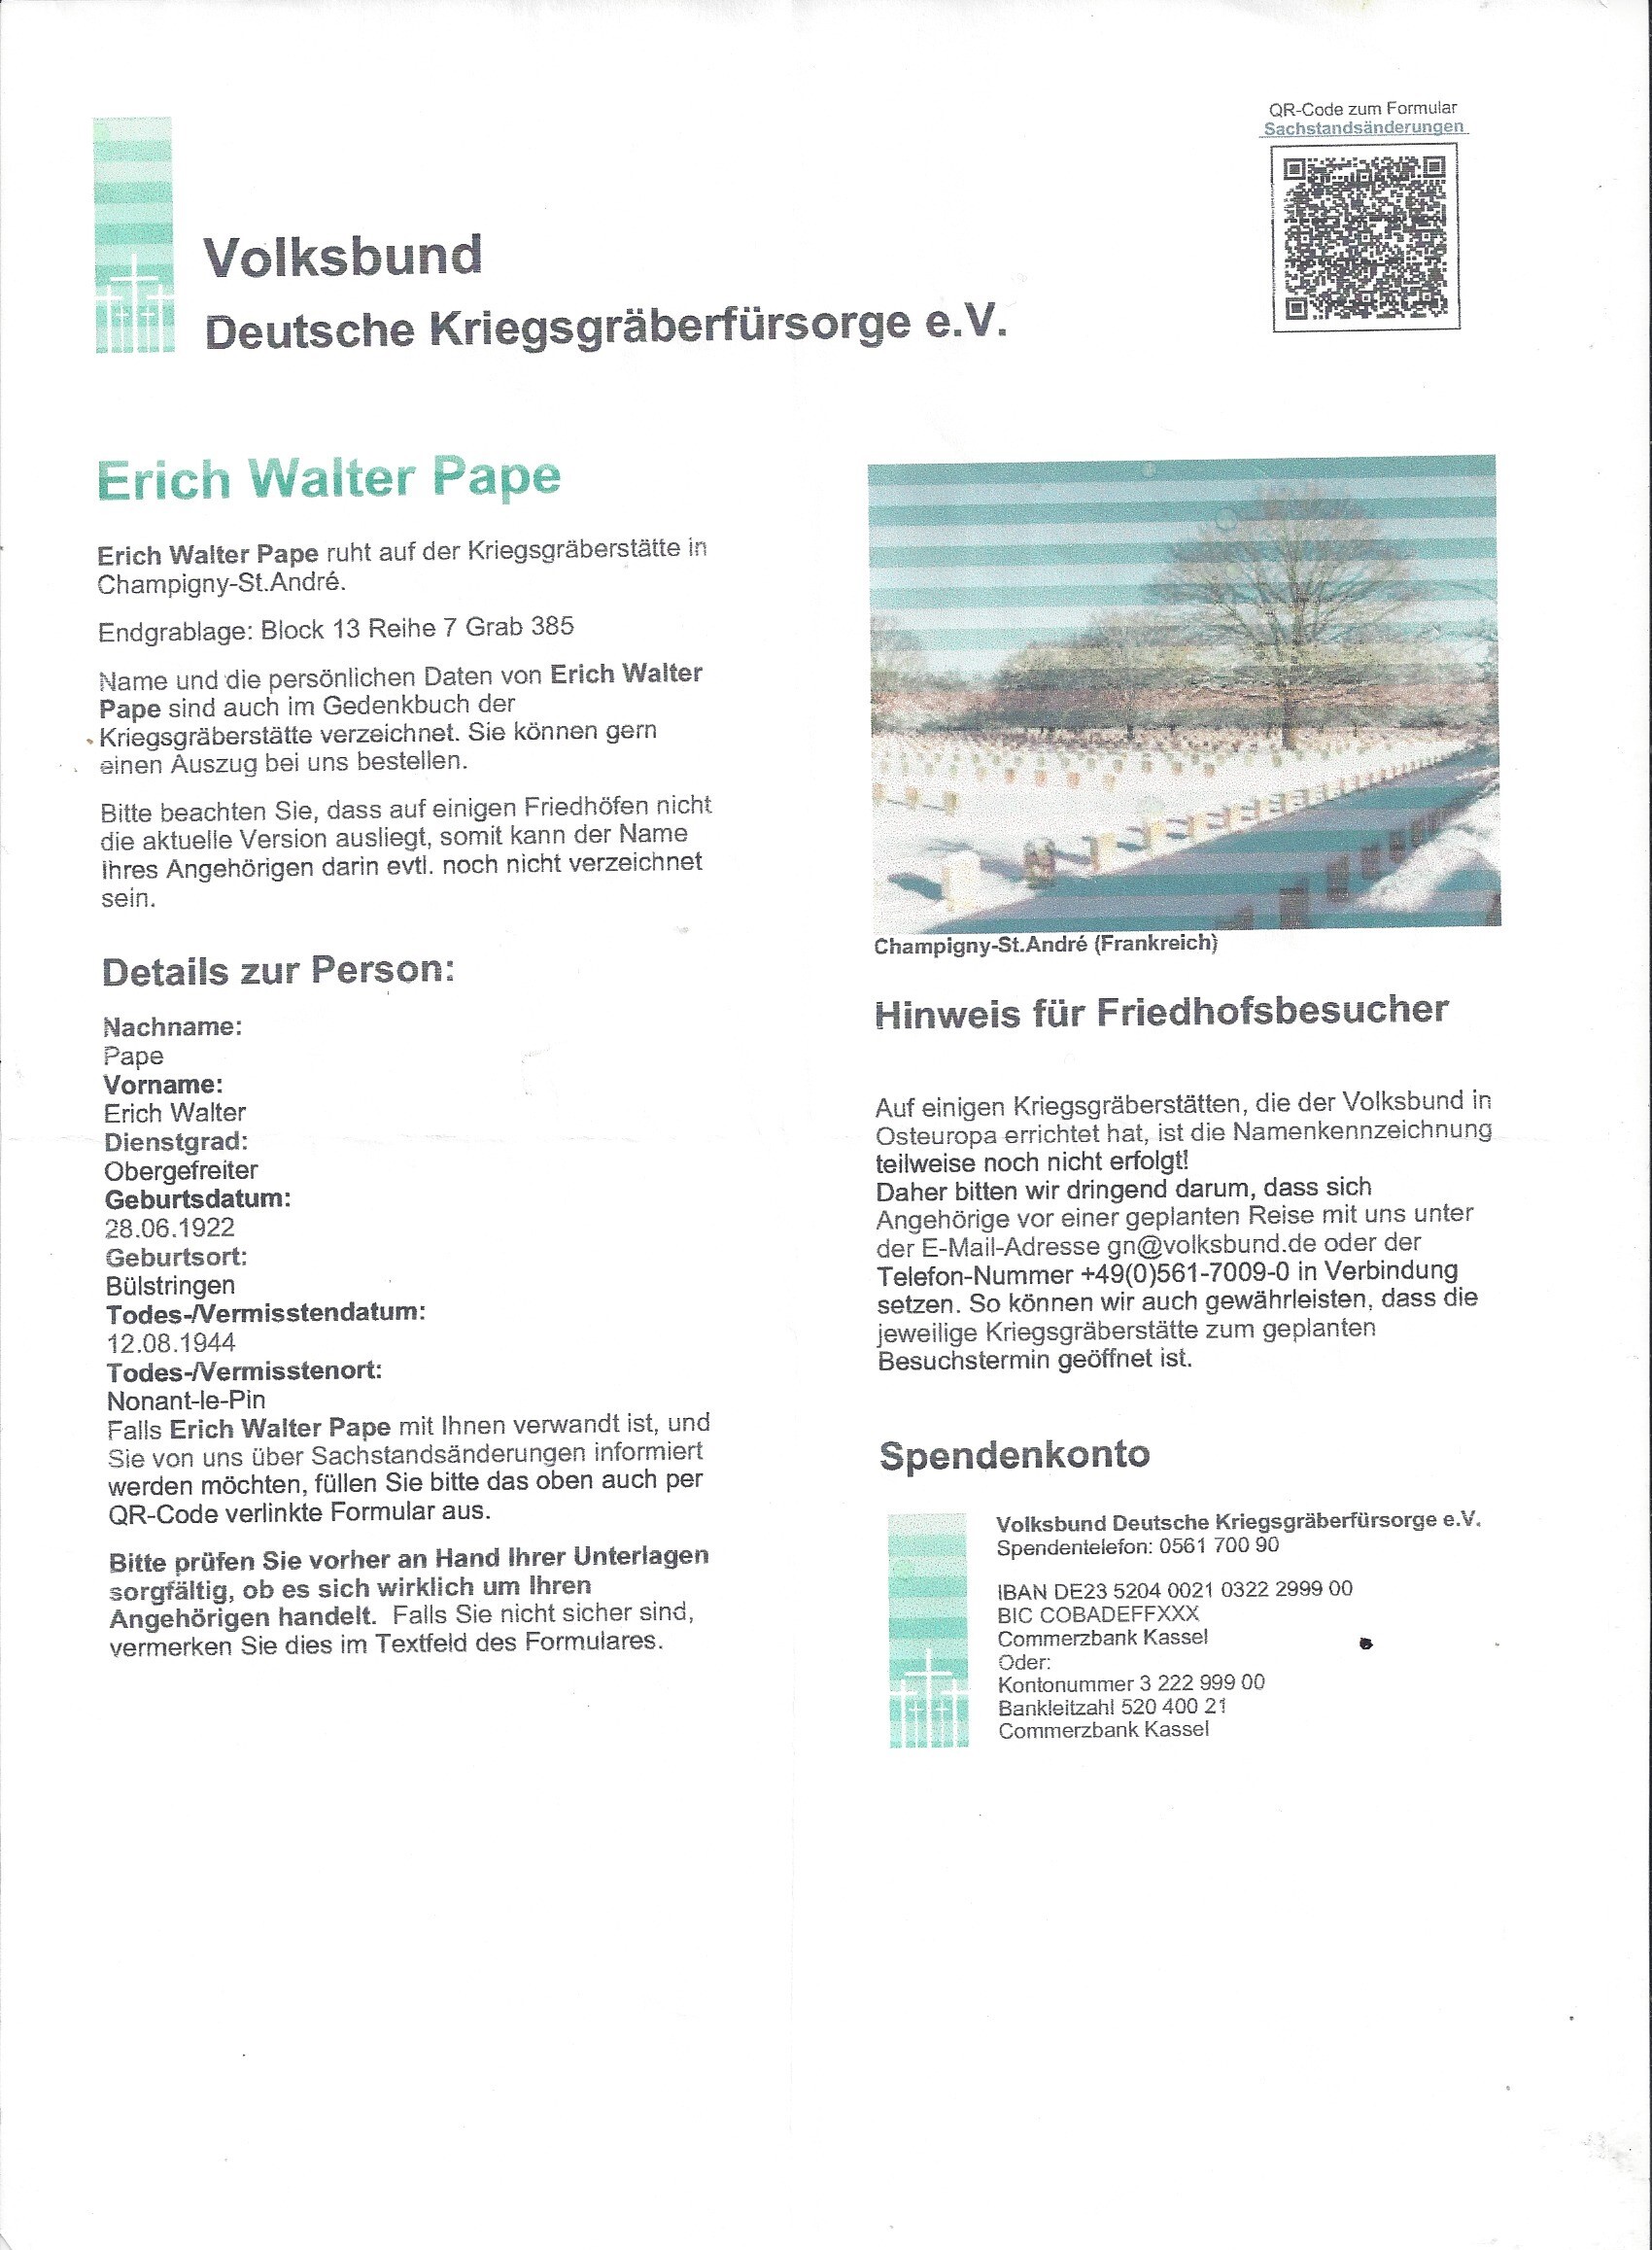 Casque para allemand KIA certificat